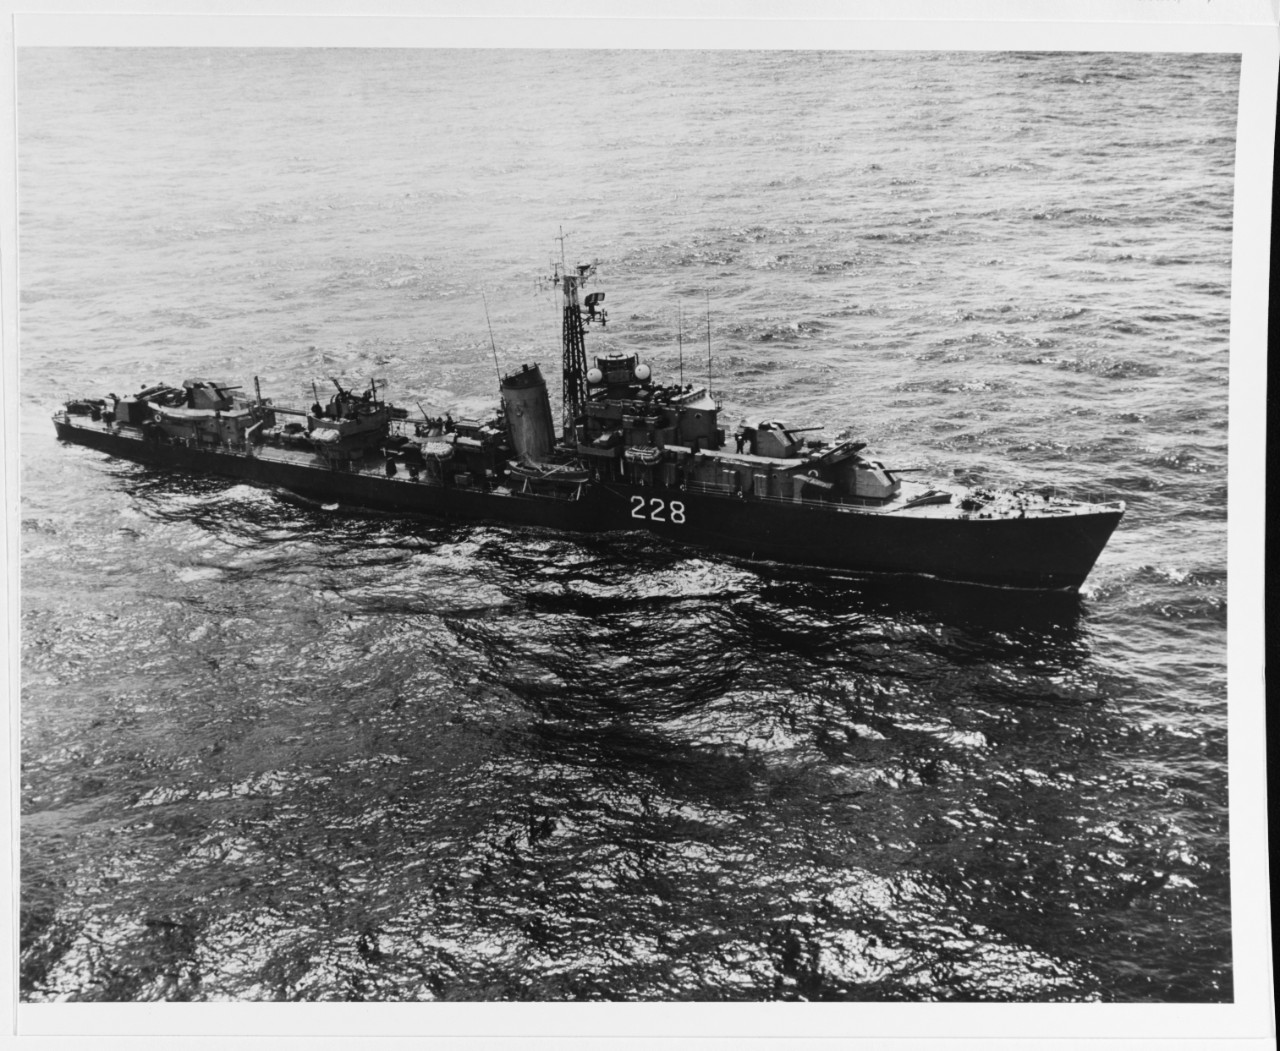 HMCS CRUSADER (Canadian destroyer, 1944)